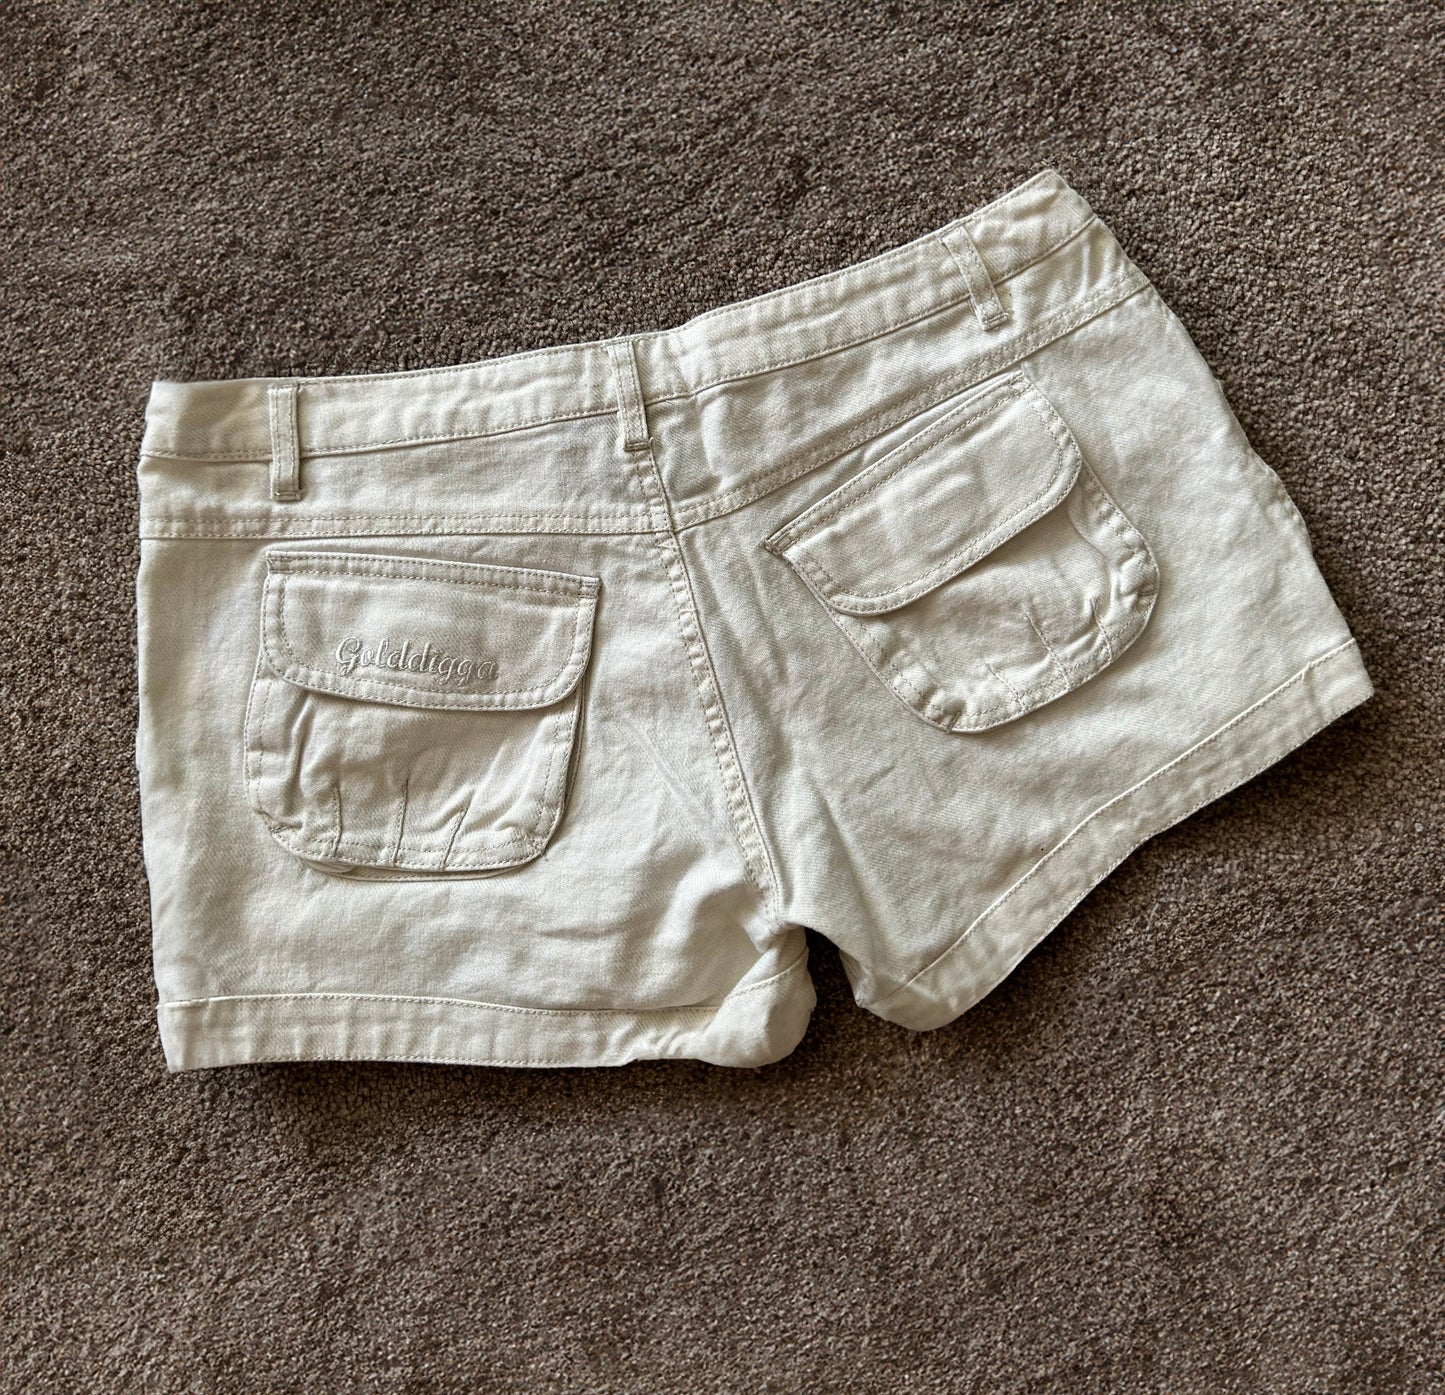 Golddigga White Short Shorts, Size 10